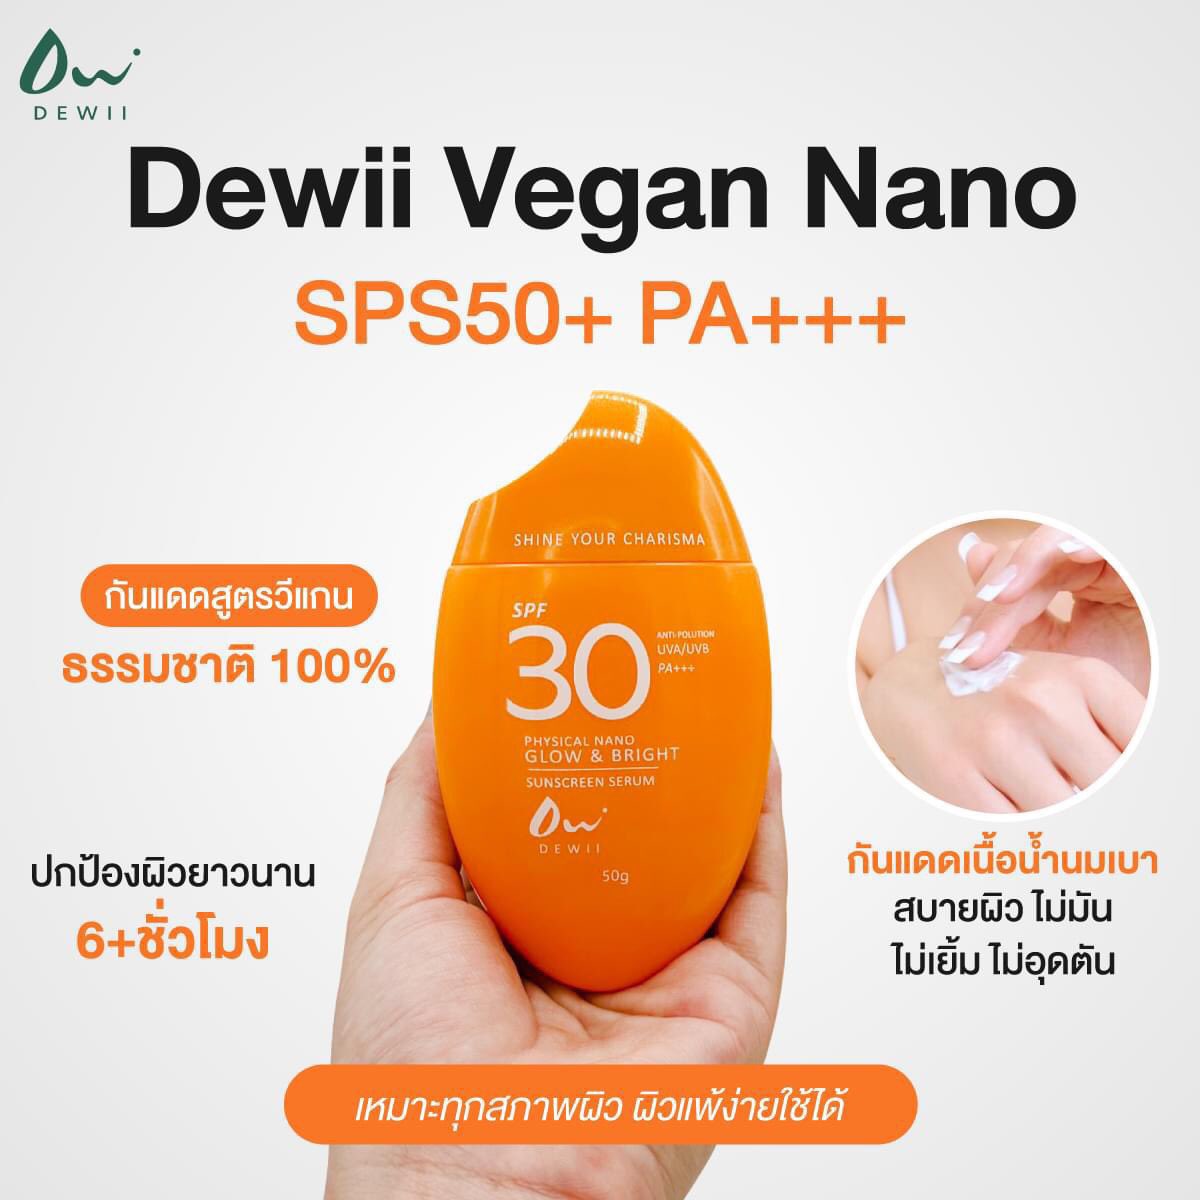 Dewii Sunsafe vegan sunscreen 

- ผลิตภัณฑ์ที่มีส่วนผสมธรรมชาติ 100%
- ปกป้องผิวยาวนาน 6+ชั่วโมง
- กันแดดเนื้อน้ำนมเบา 
- ไม่มัน ไม่เยิ้ม ไม่อุดตัน

#SunScreenDEWIIxENGFA @EWaraha